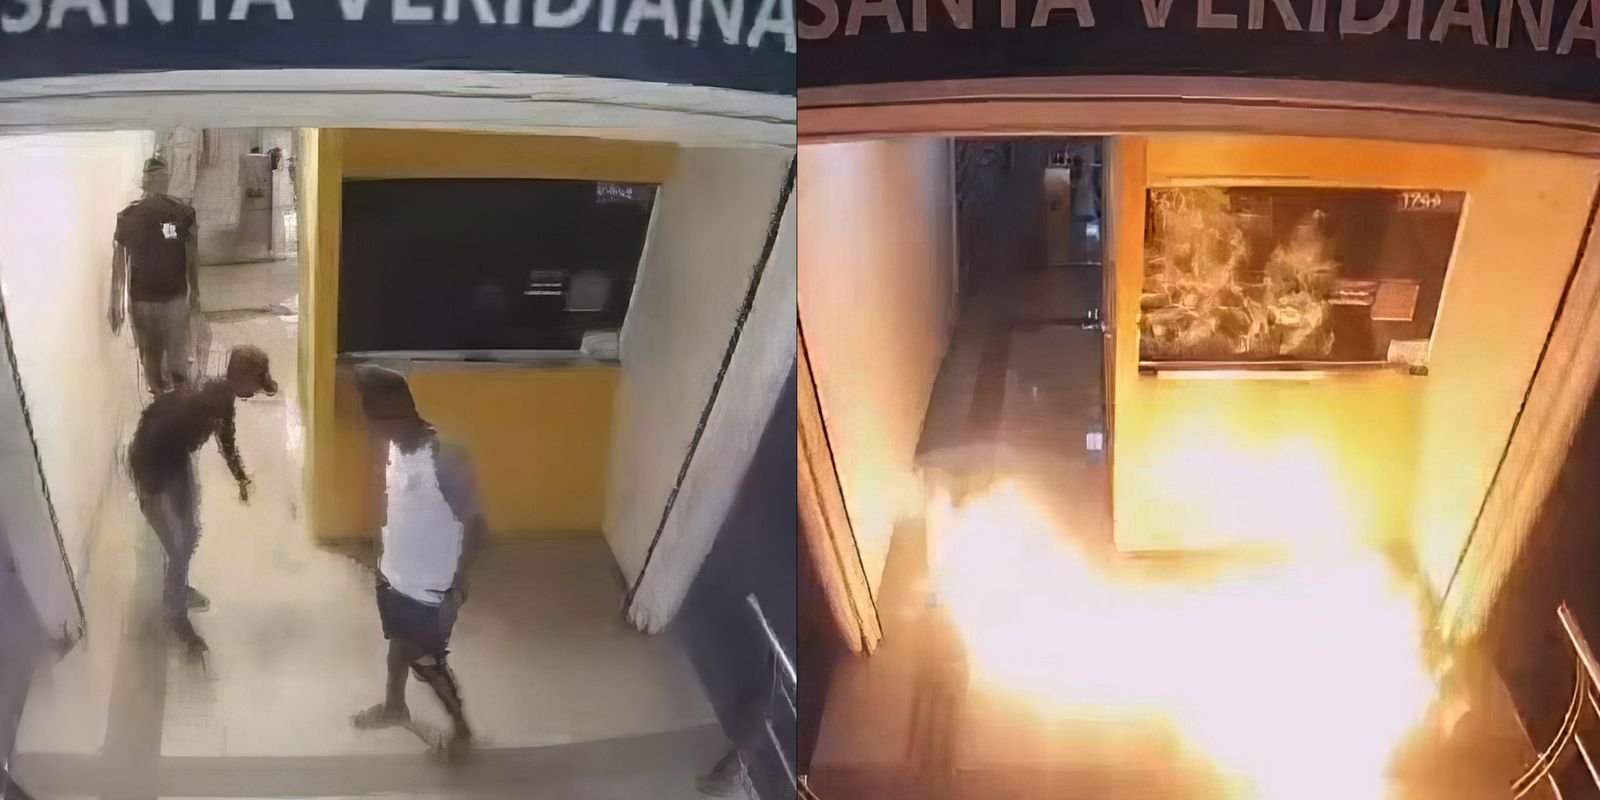 prefeito-do-rio-divulga-video-com-flagrante-de-incendio-criminoso